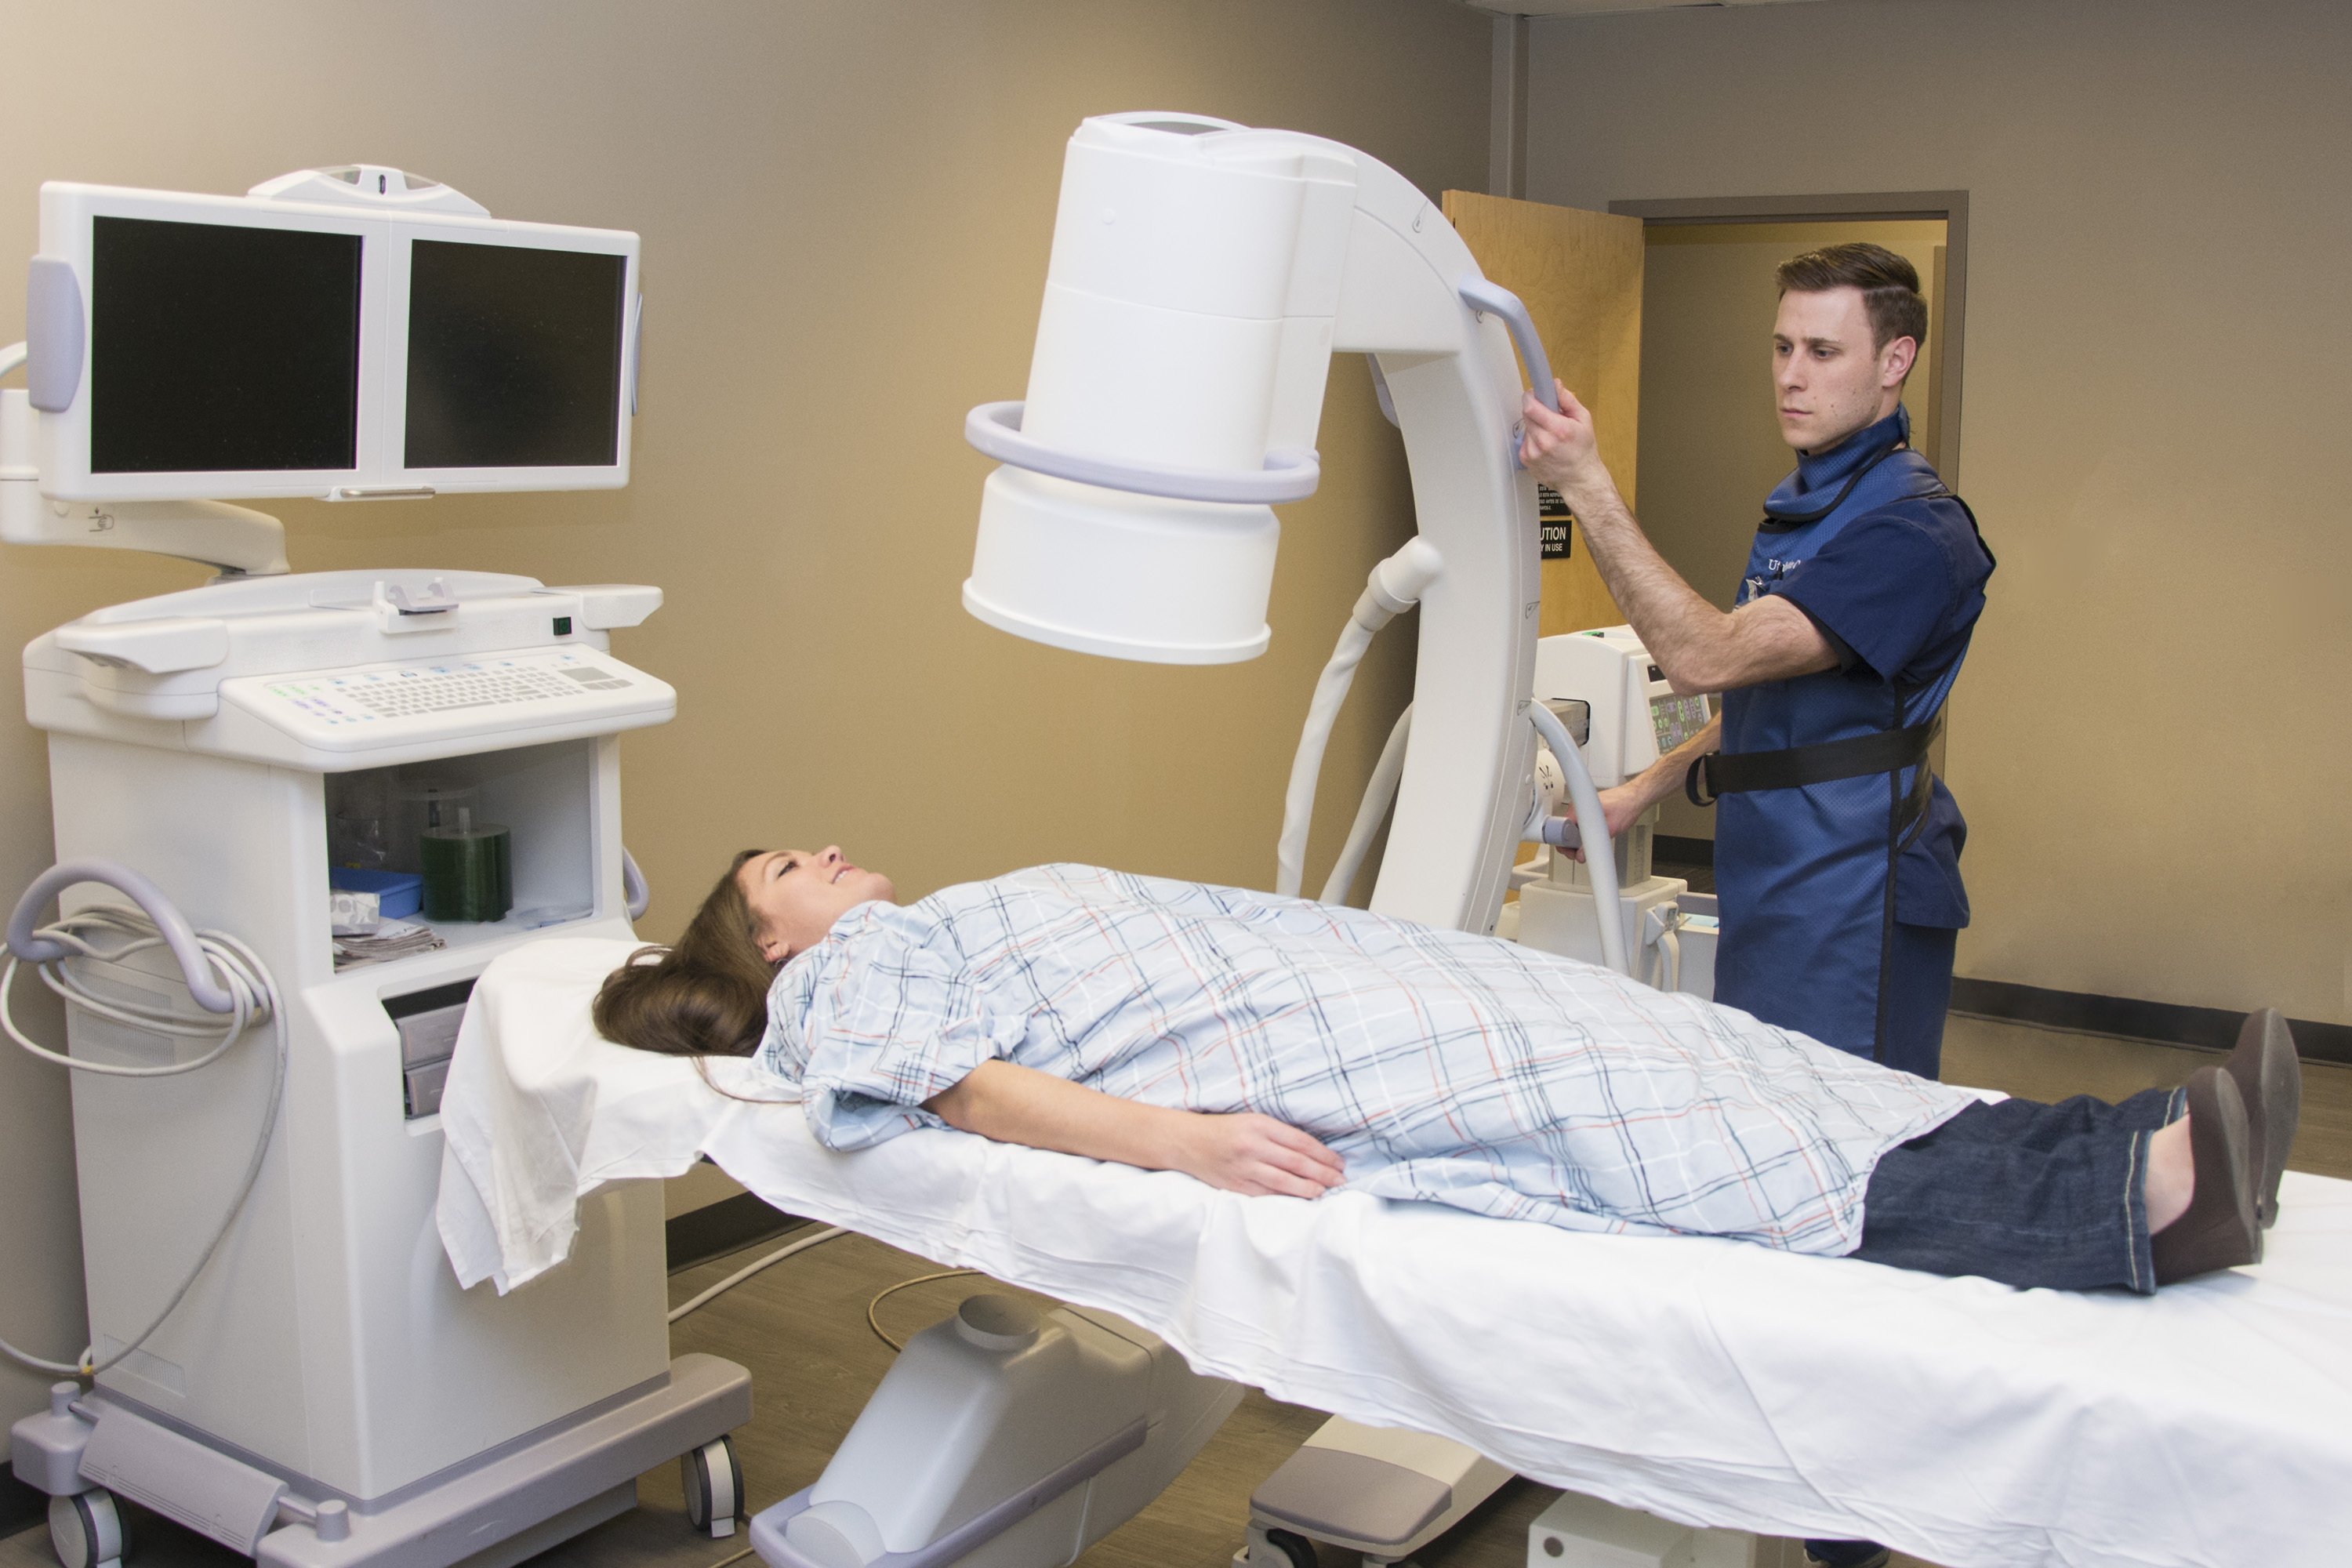 Un paciente preparando a otro para una radiografía. | Fuente: Shutterstock